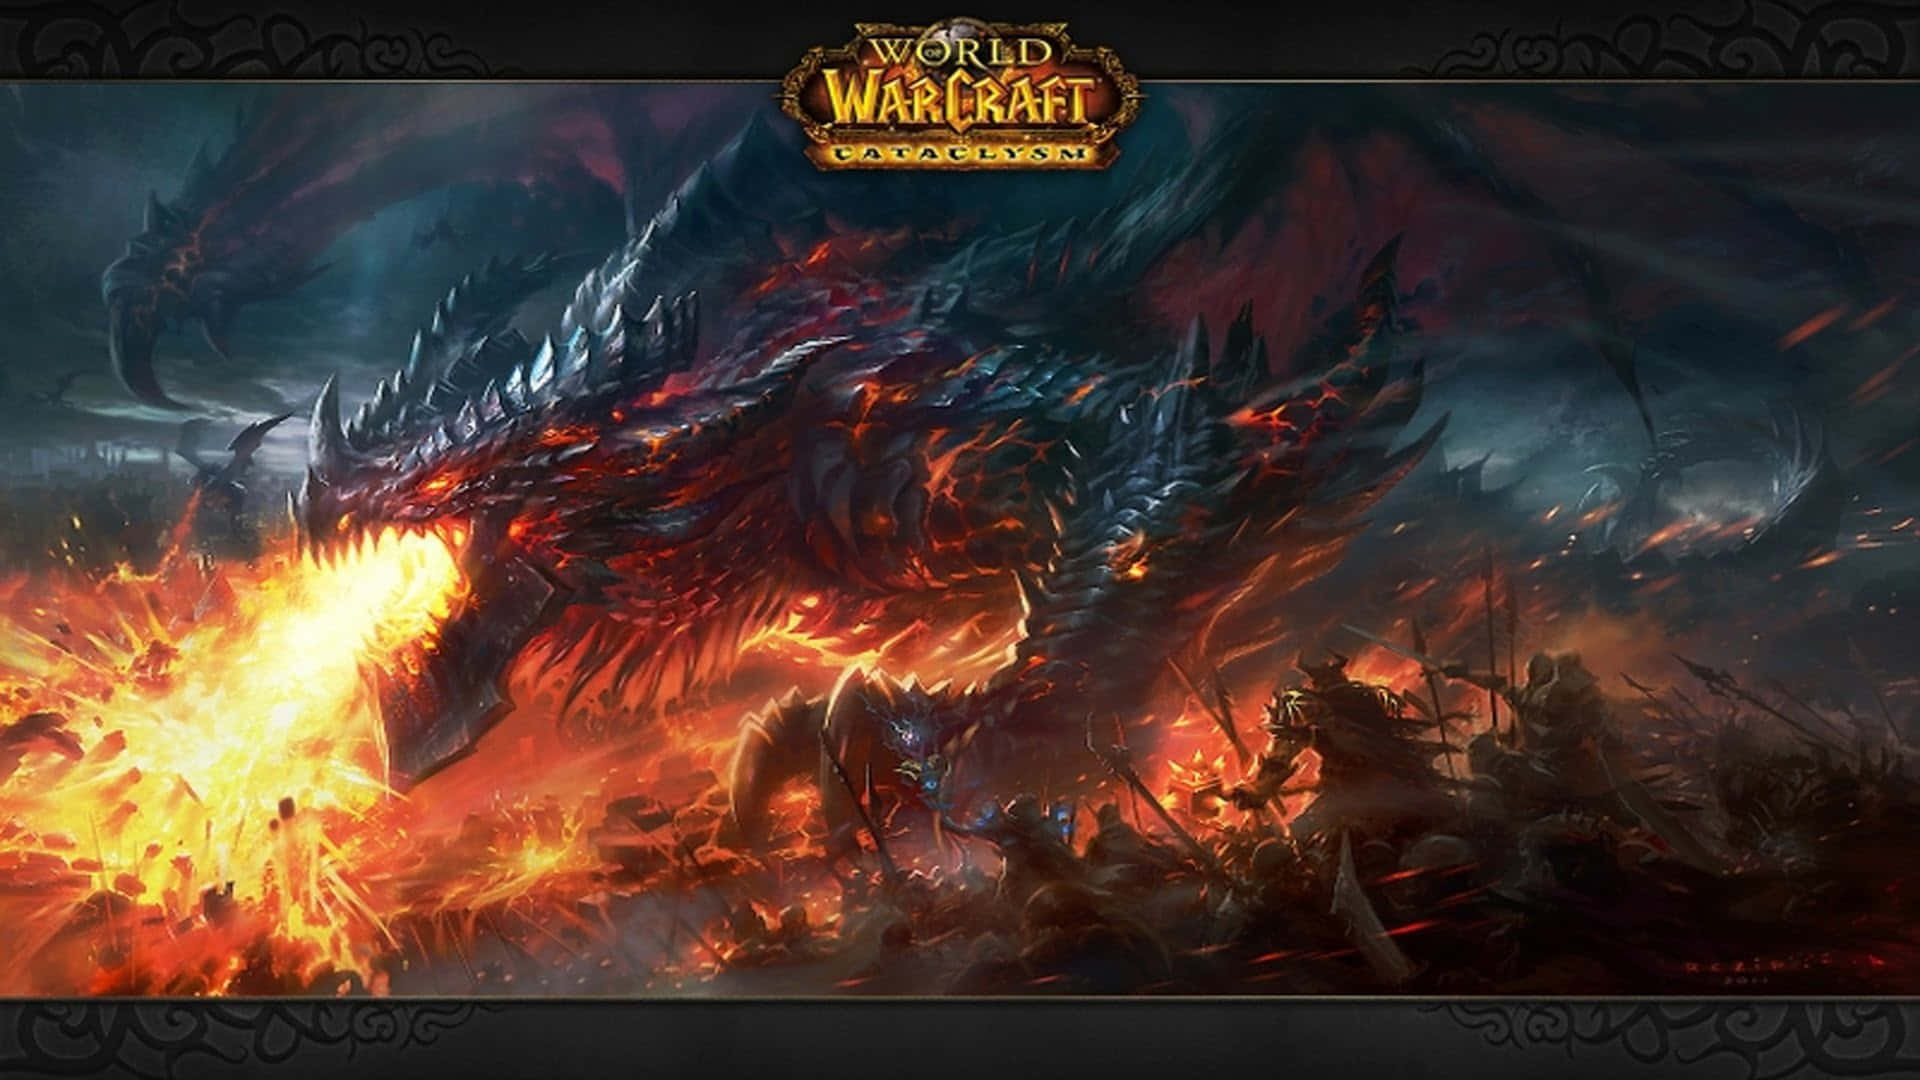 Enepisk Resa Väntar I World Of Warcraft. Wallpaper